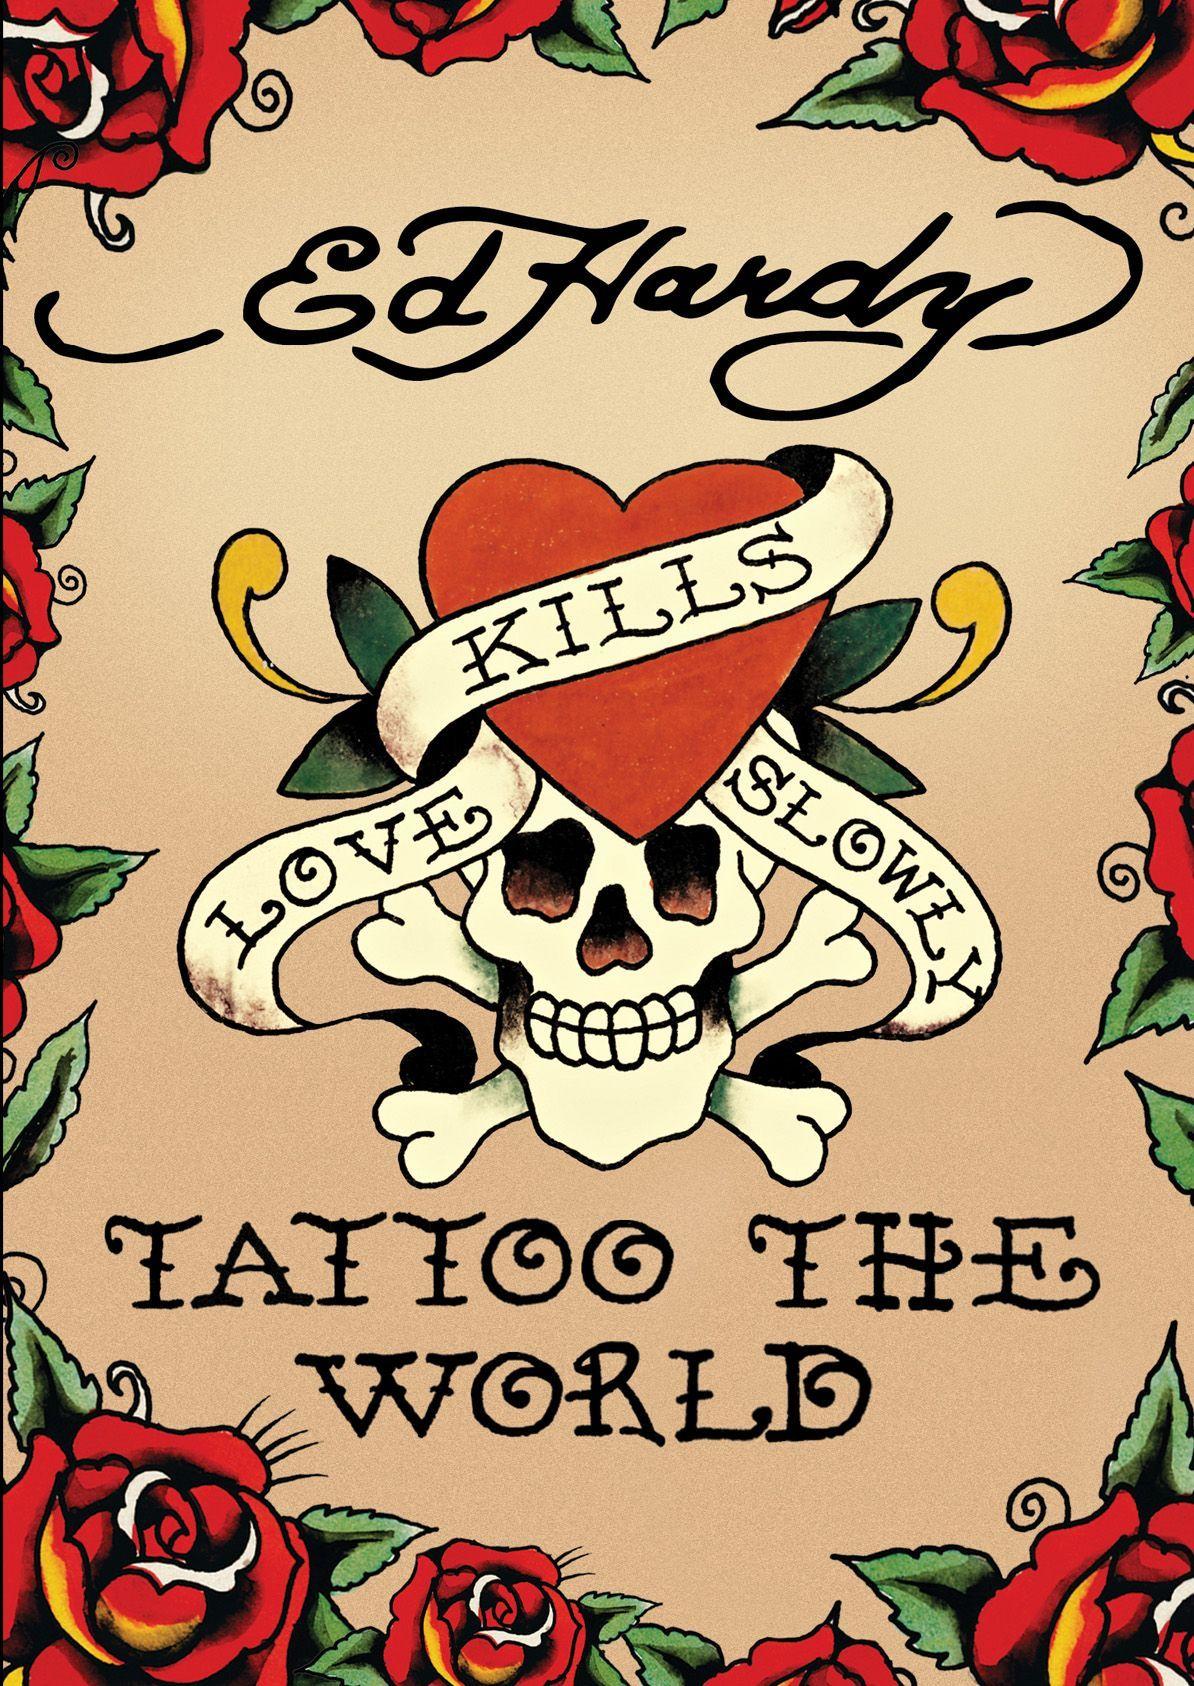 Ed Hardy Tattoo The World. Art 1. Tattoo, Tattoo art